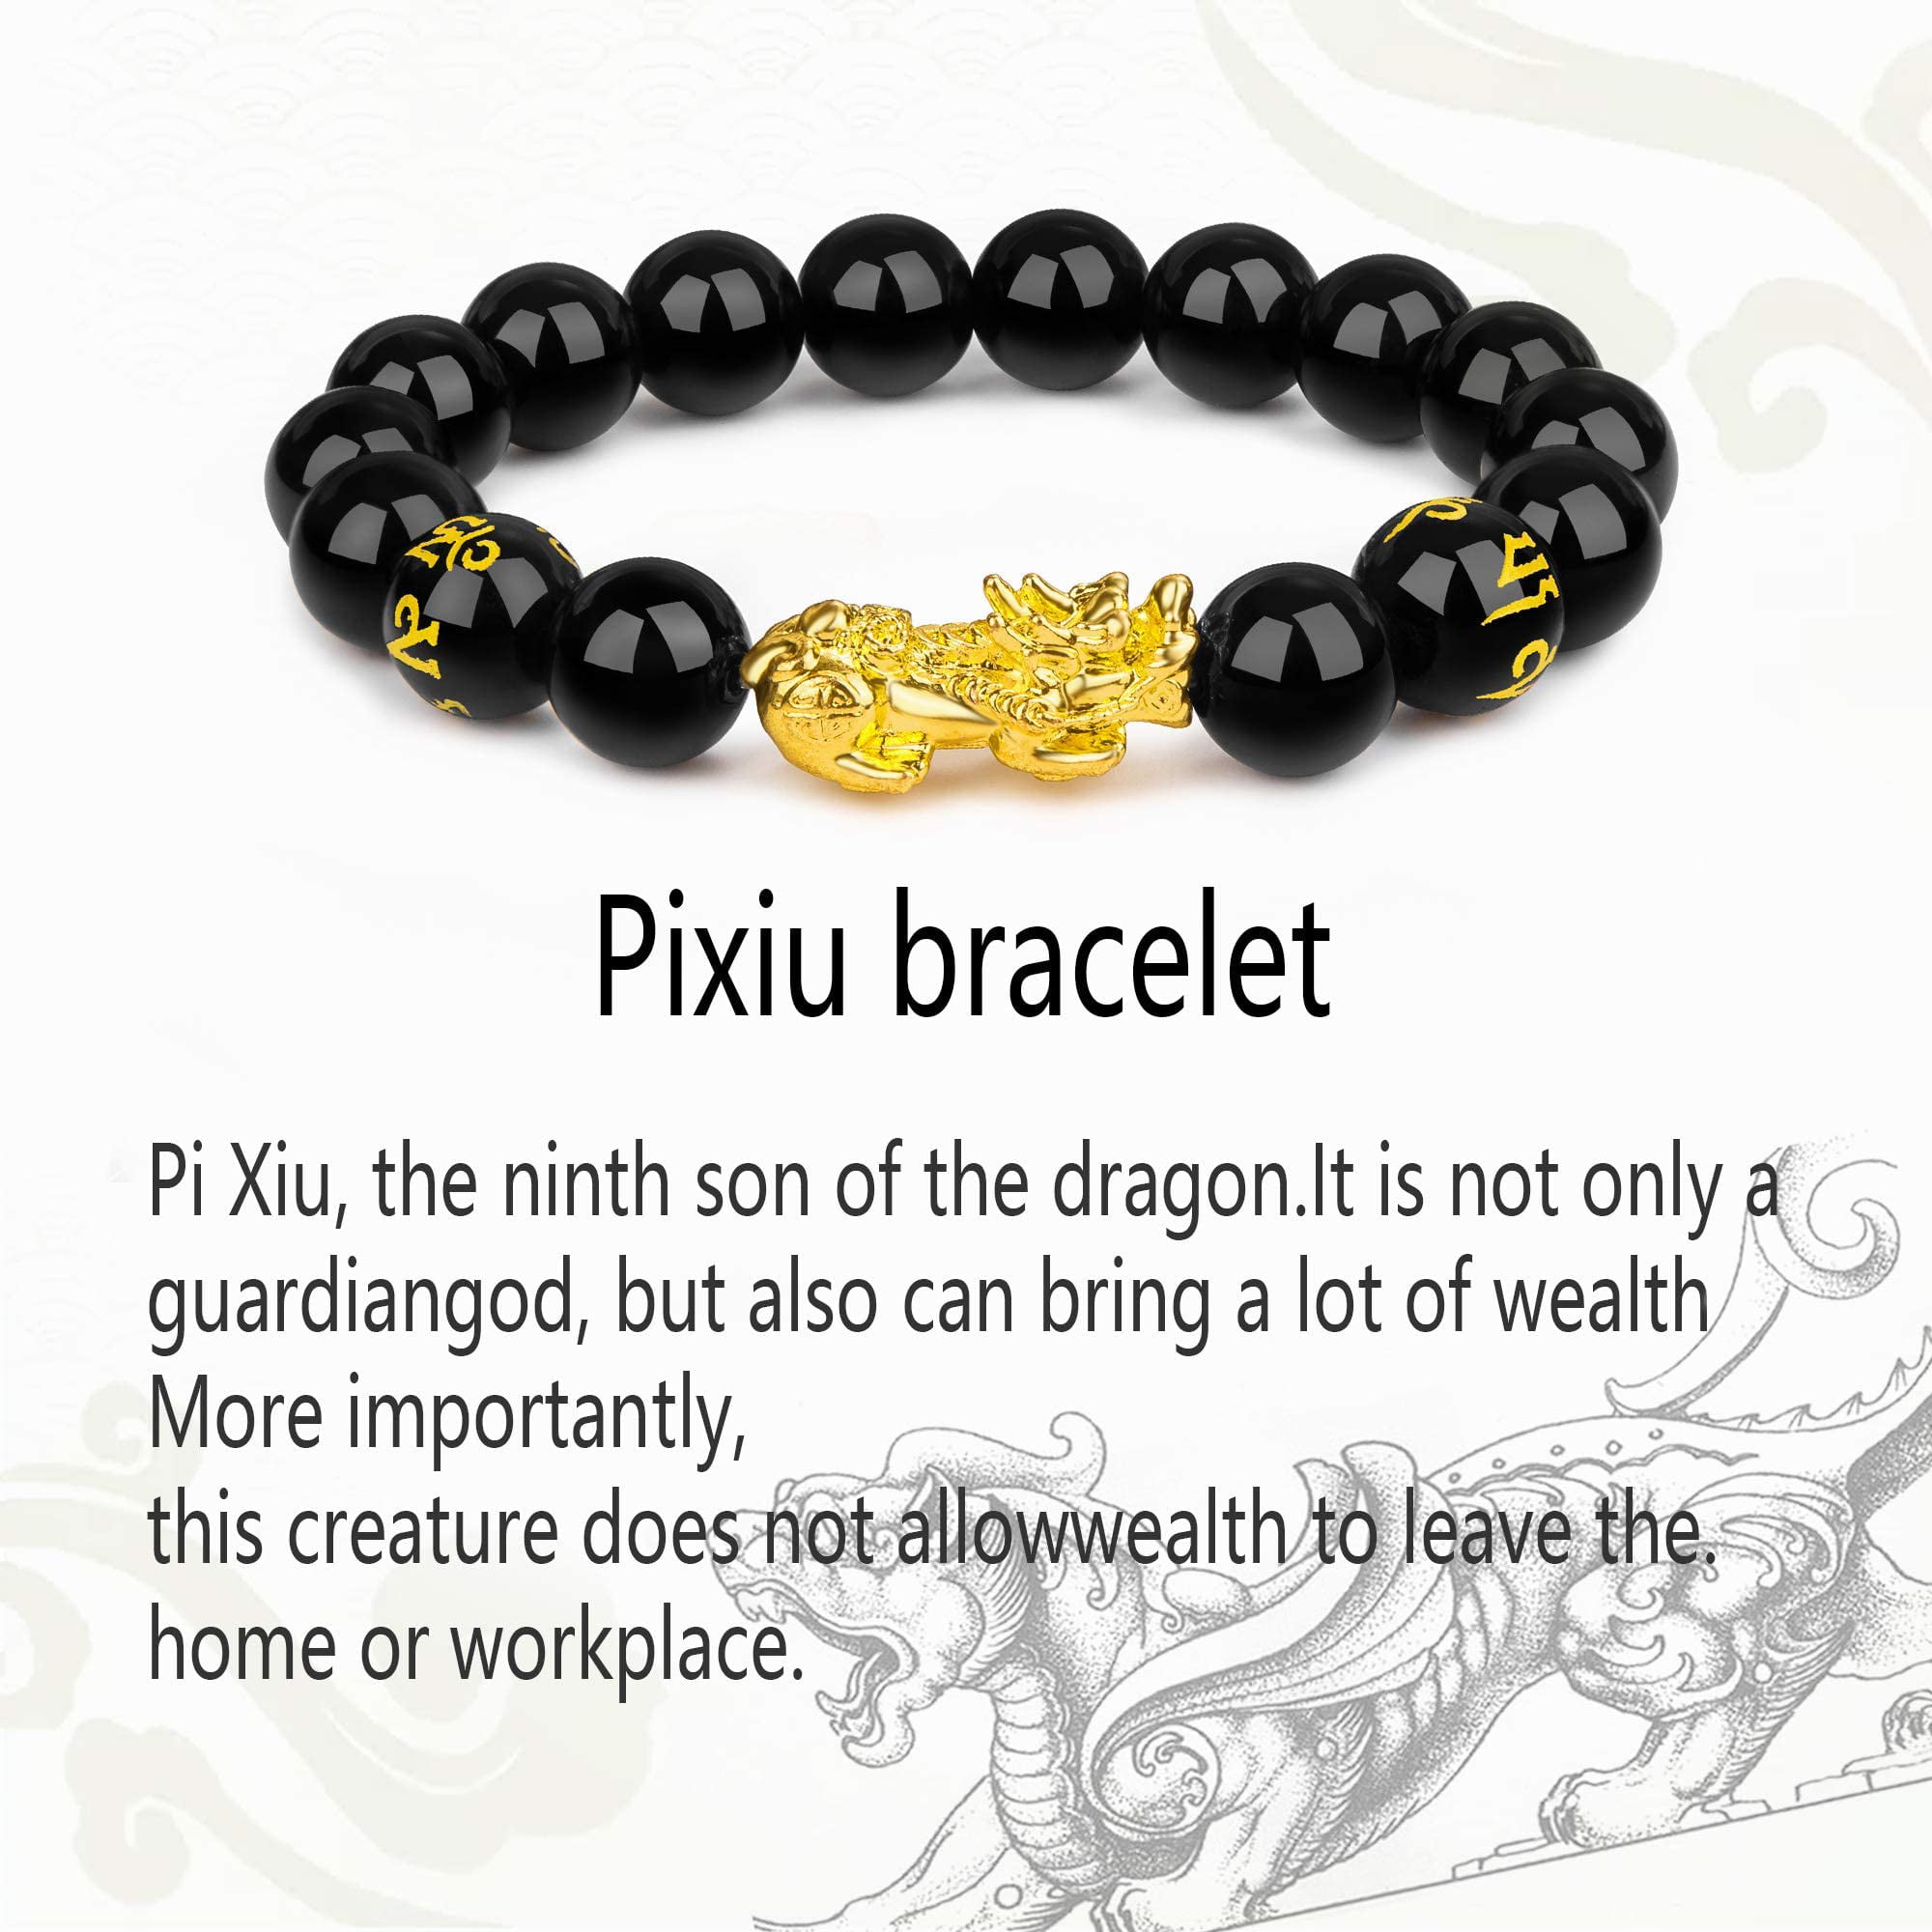 PLTGOOD 8mm/12mm Pixiu Beads Bracelets Feng Shui Black Obsidian Wealth Bracelet for Men Women Sanskrit Hand Carved Mantra Elastic Bracelet